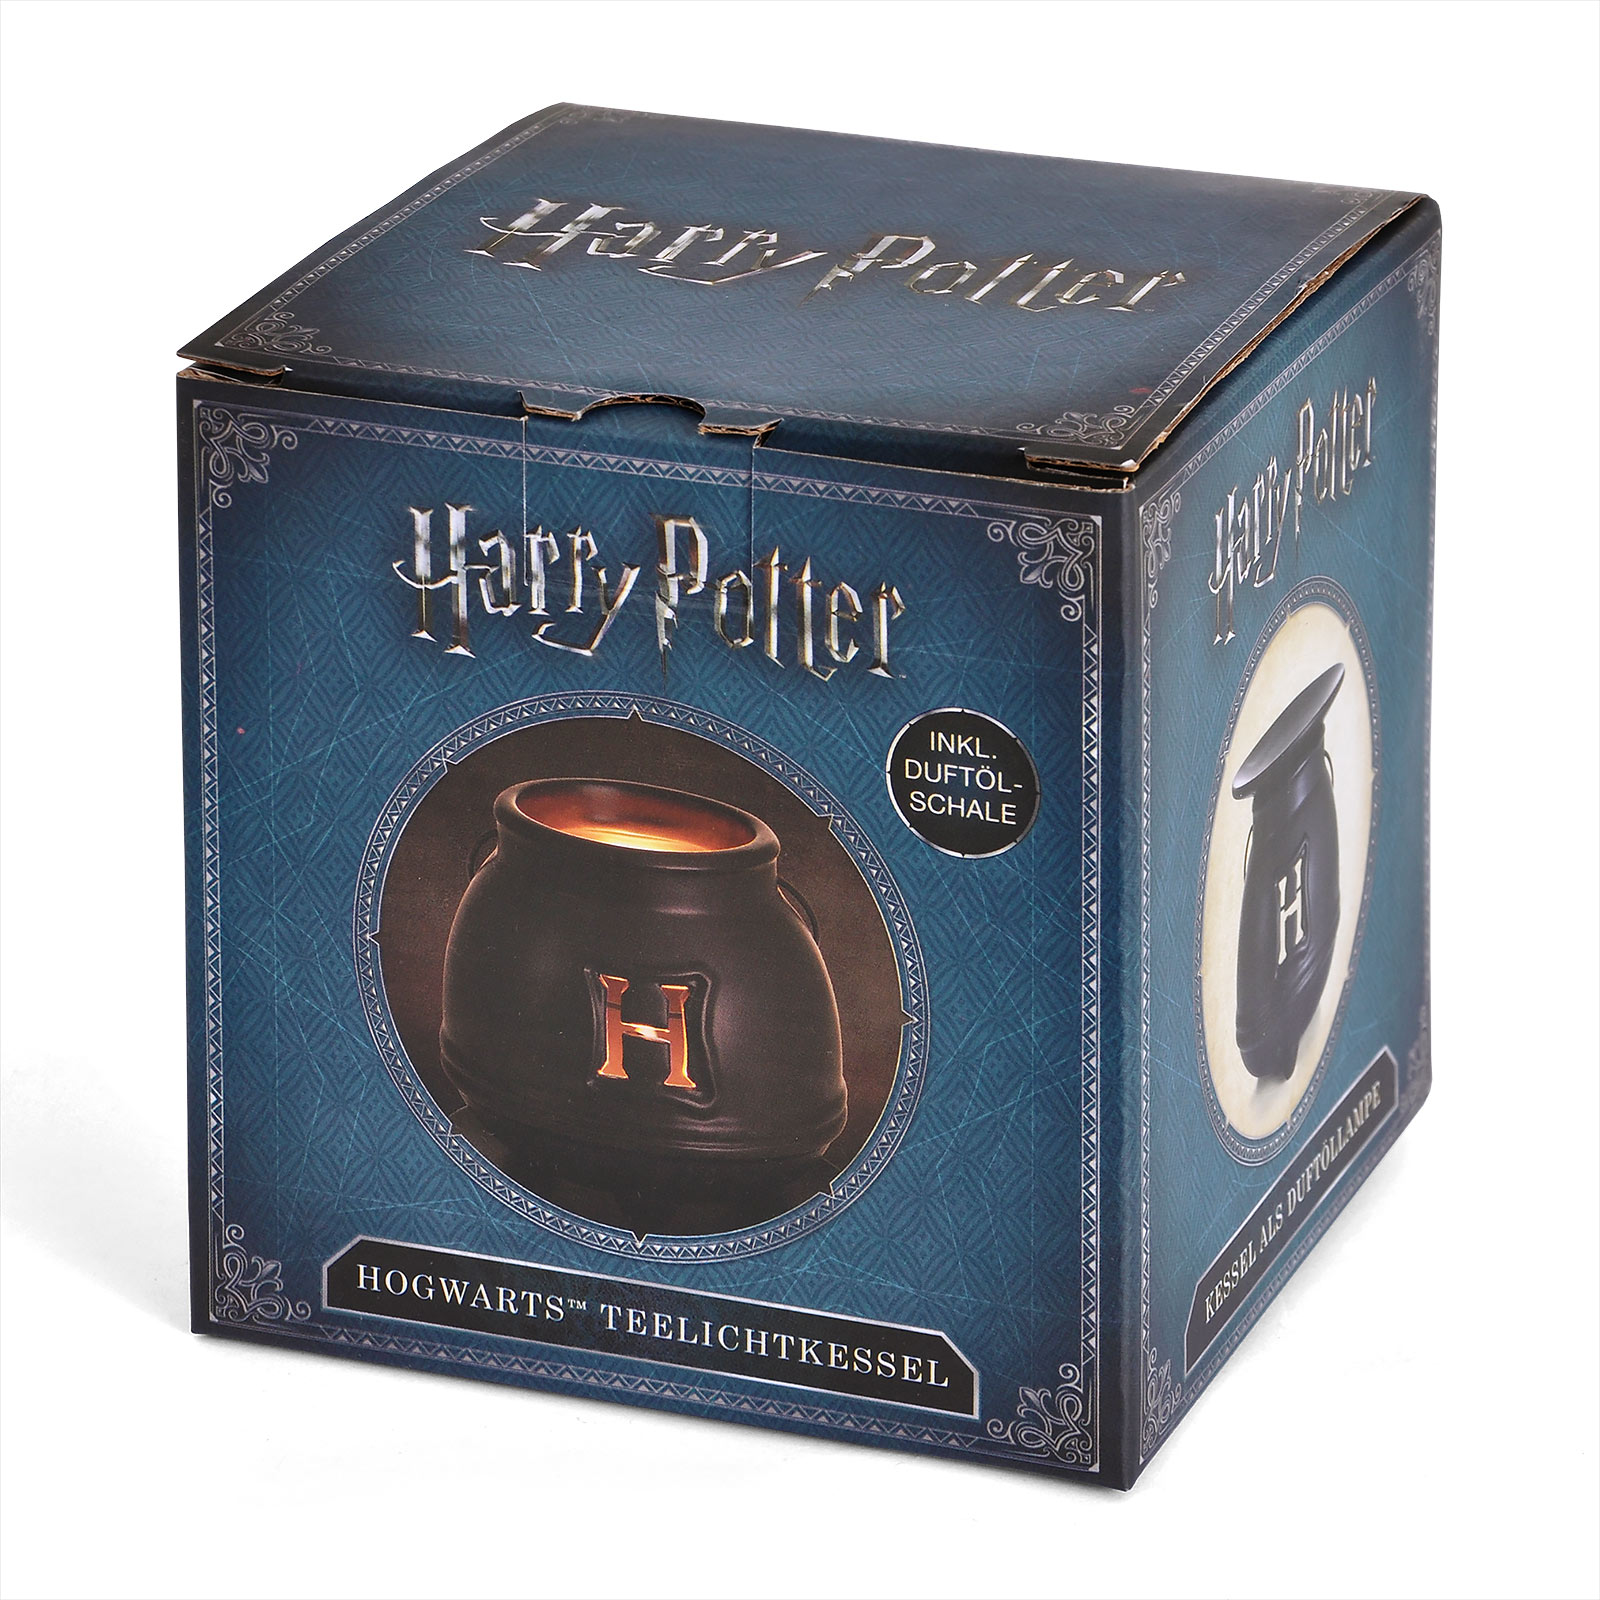 Hogwarts Teelichtkessel für Harry Potter Fans